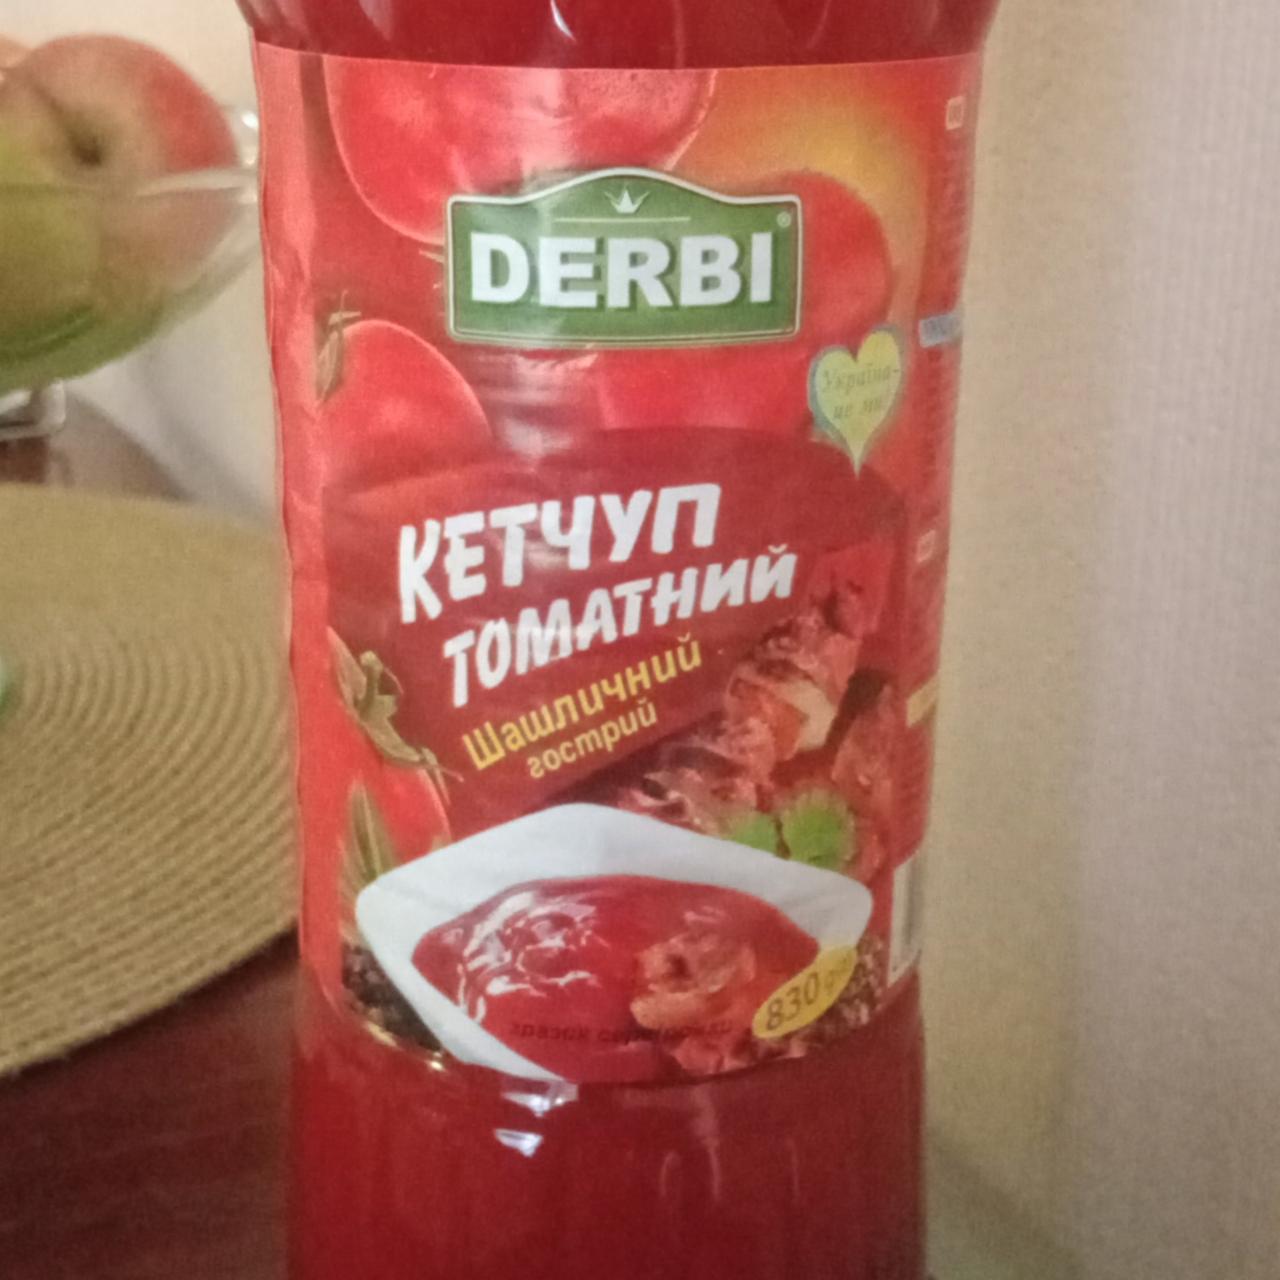 Фото - Кетчуп томатный шашлычный Derbi